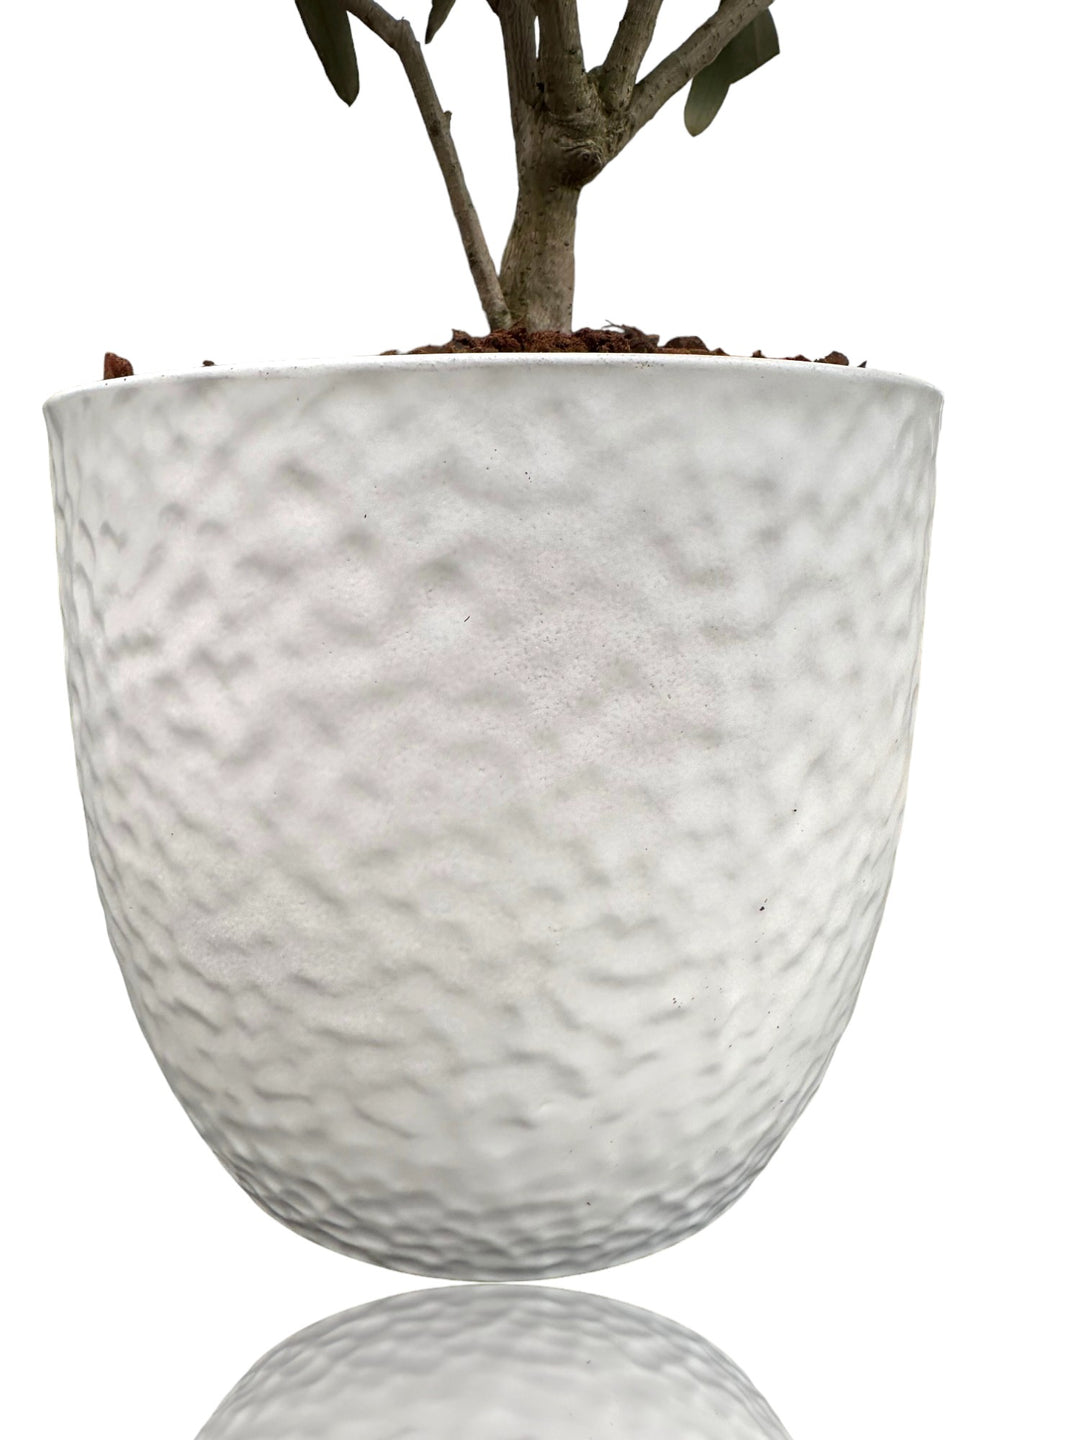 dettaglio vaso bianco in ceramica con lavorazione ondulate